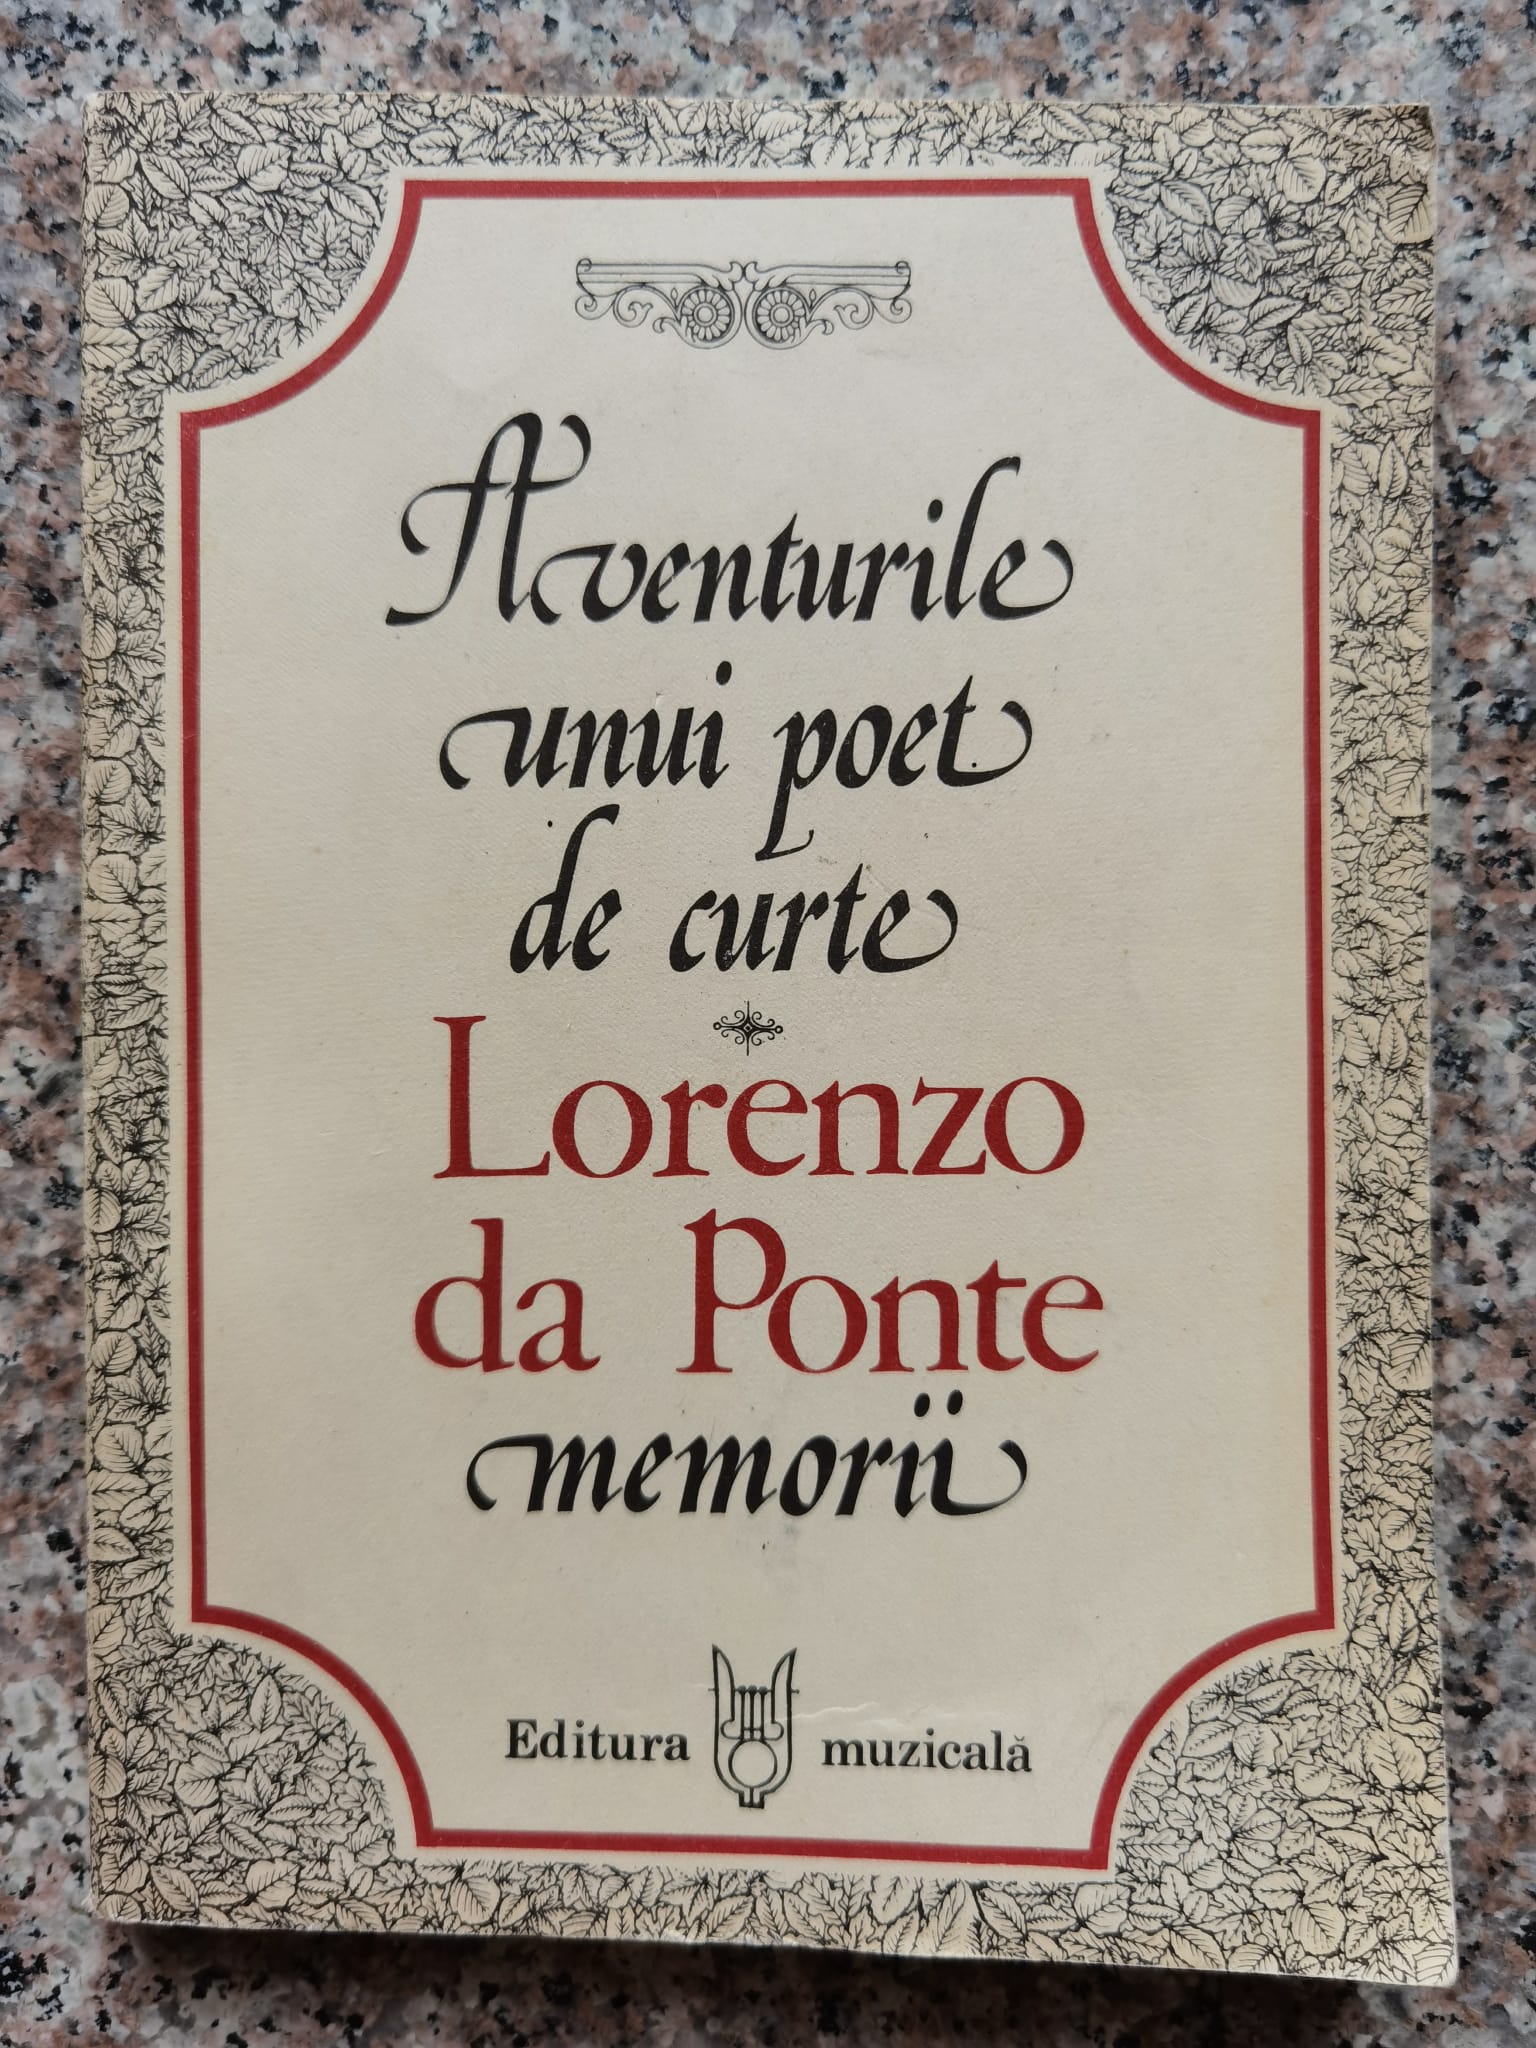 aventurile unui poet de curte memorii                                                                lorenzo da ponte                                                                                    